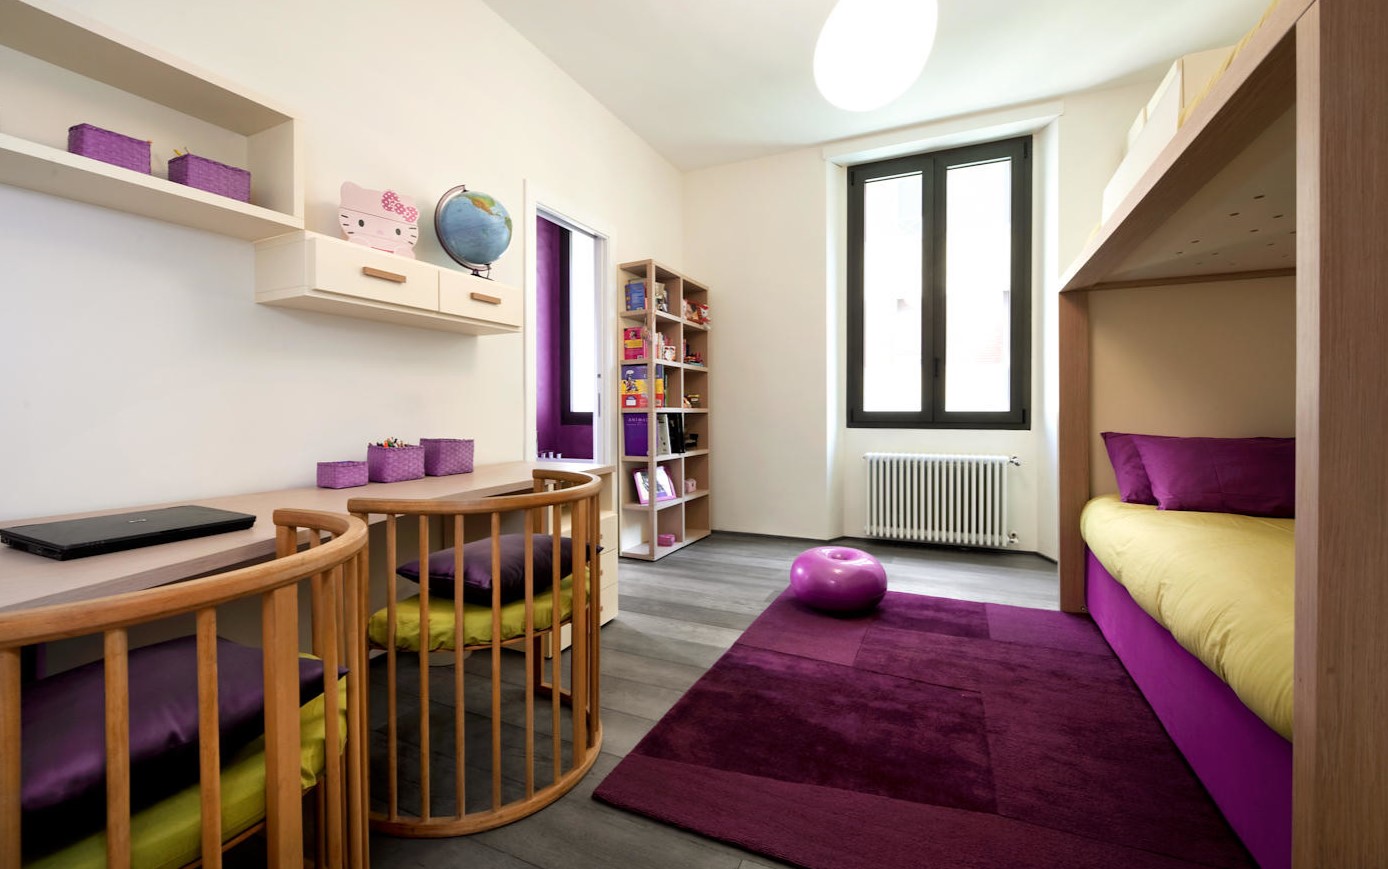 Двухъярусная кровать для детской комнаты: главные преимущества, советы по выбору мебели